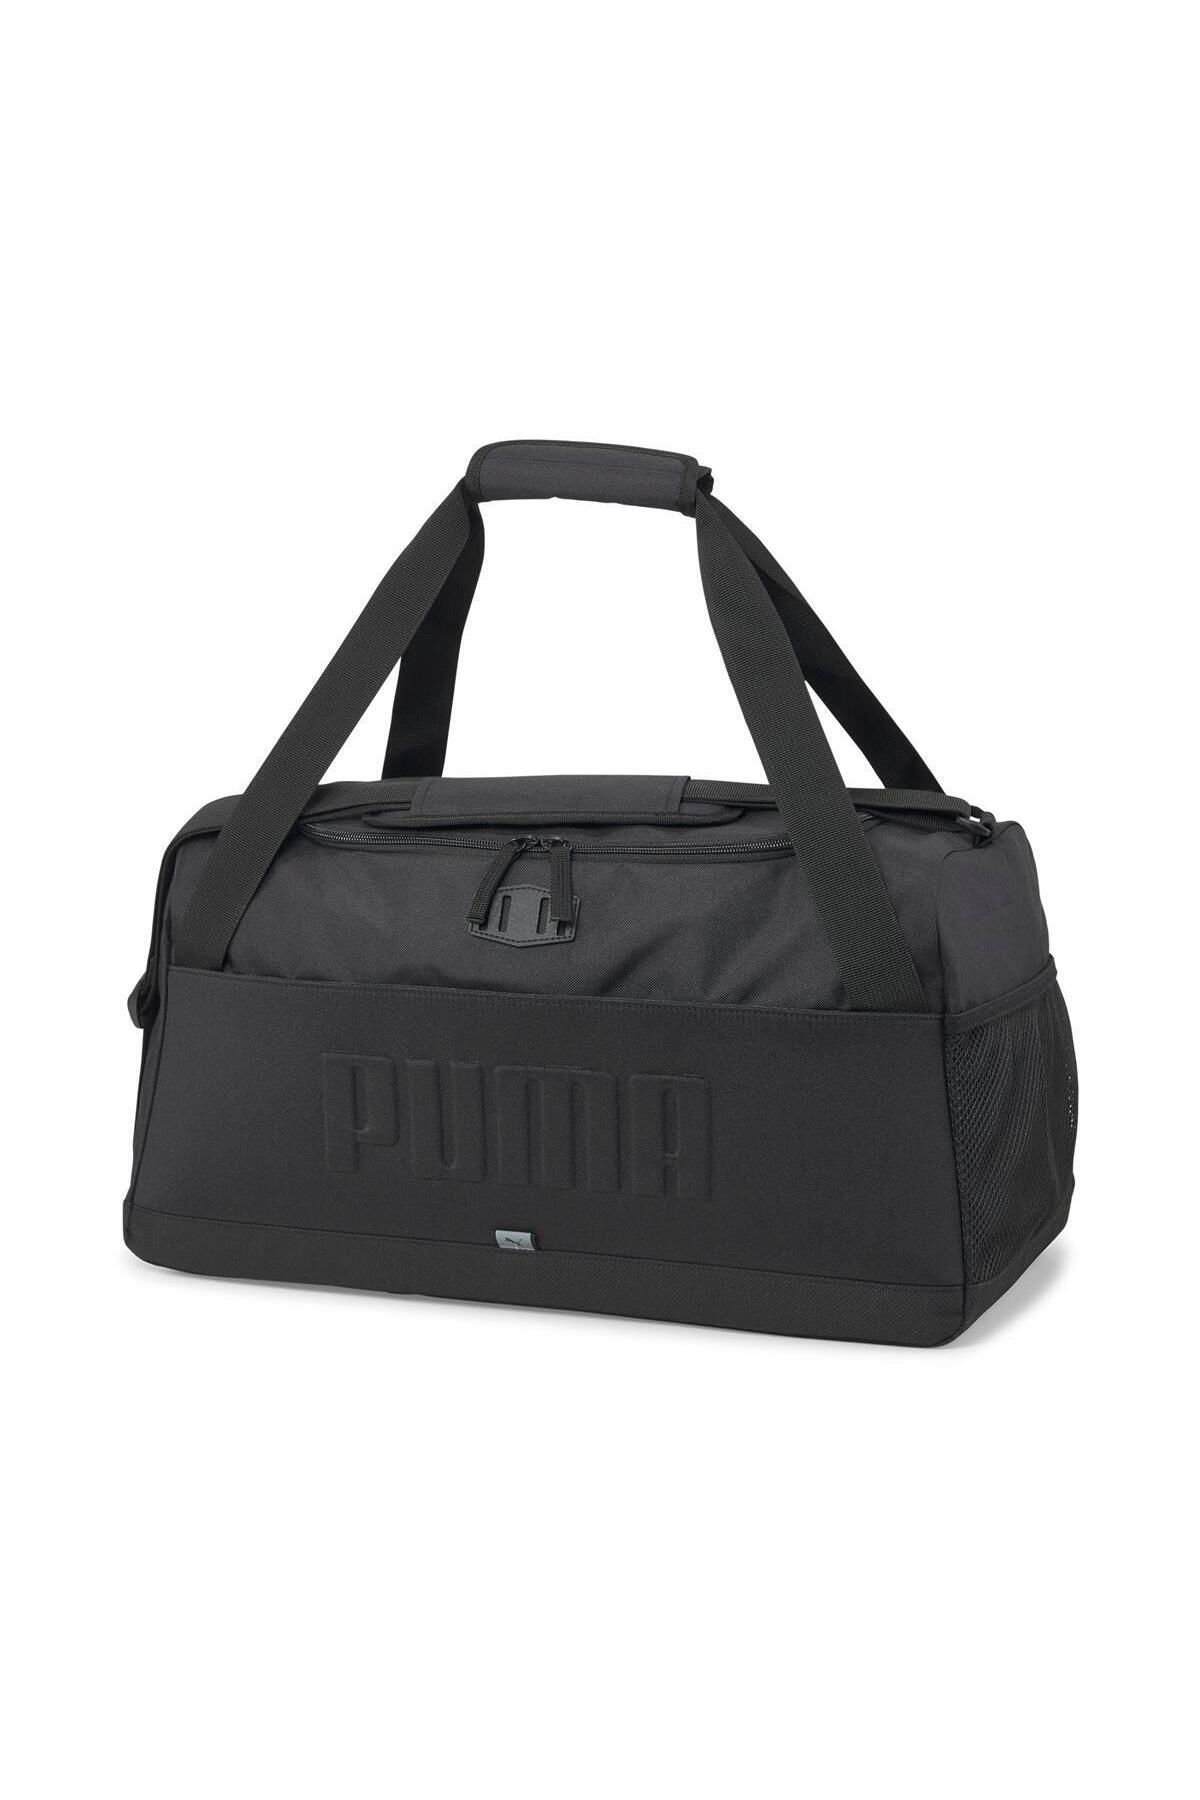 Puma S Sports Bag S Unisex Spor Çantası